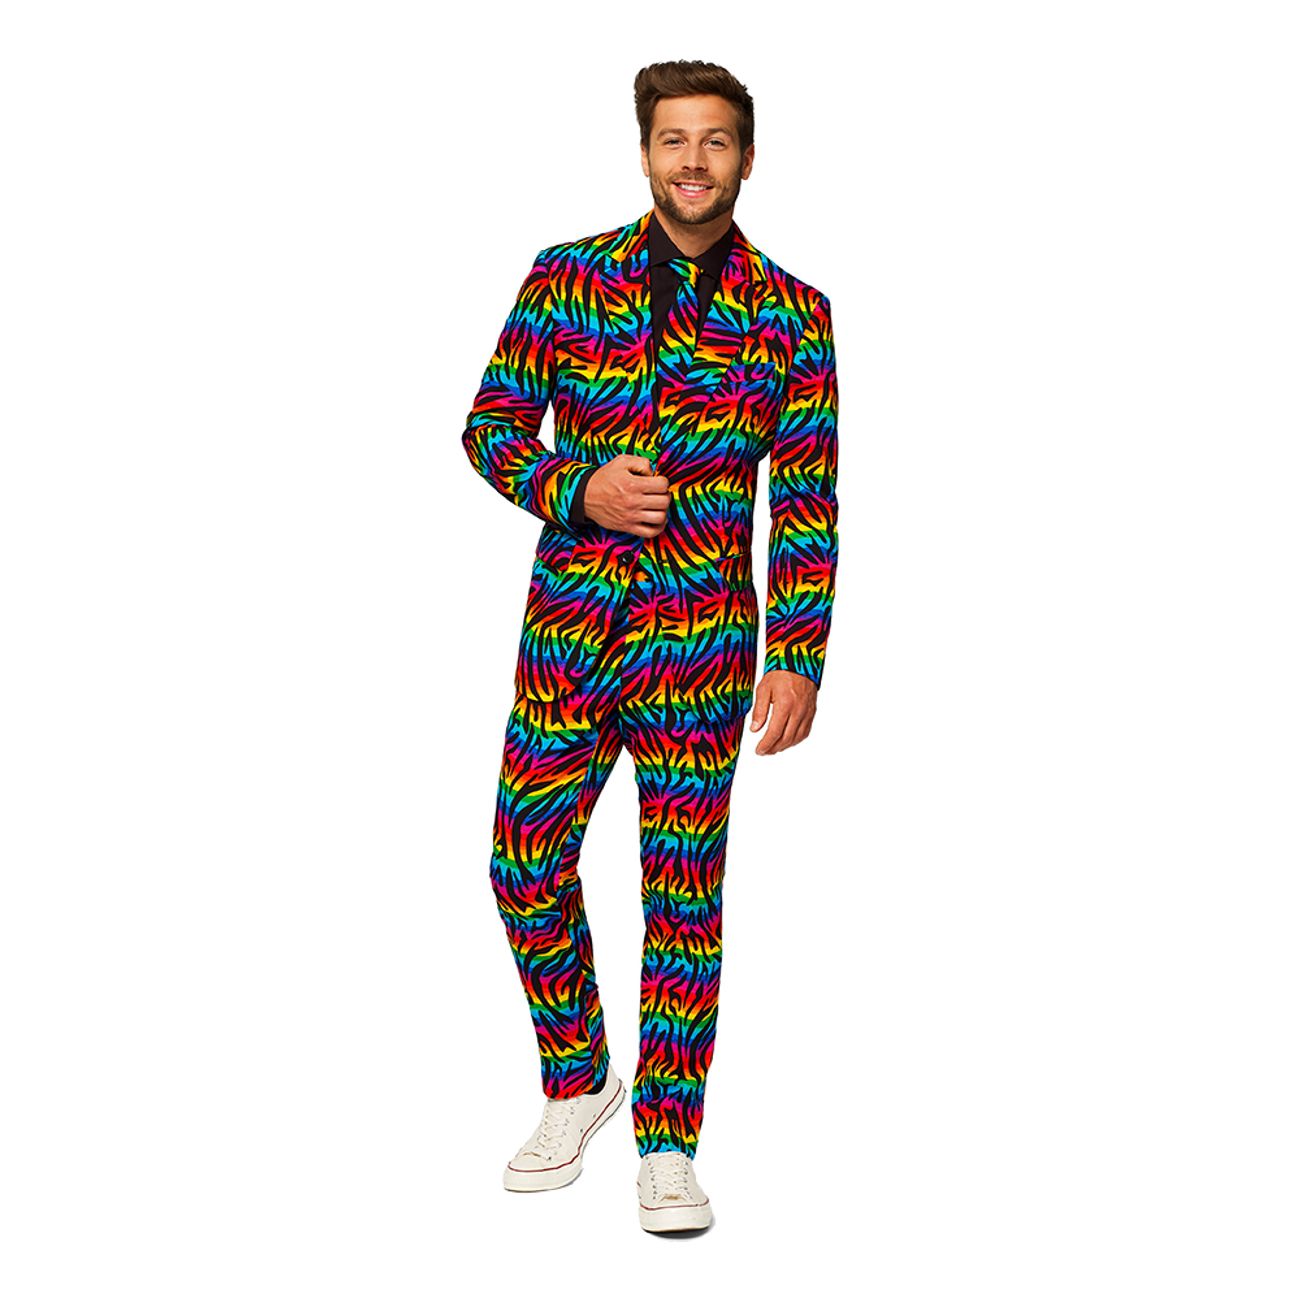 opposuits-wild-rainbow-kostym-74597-1